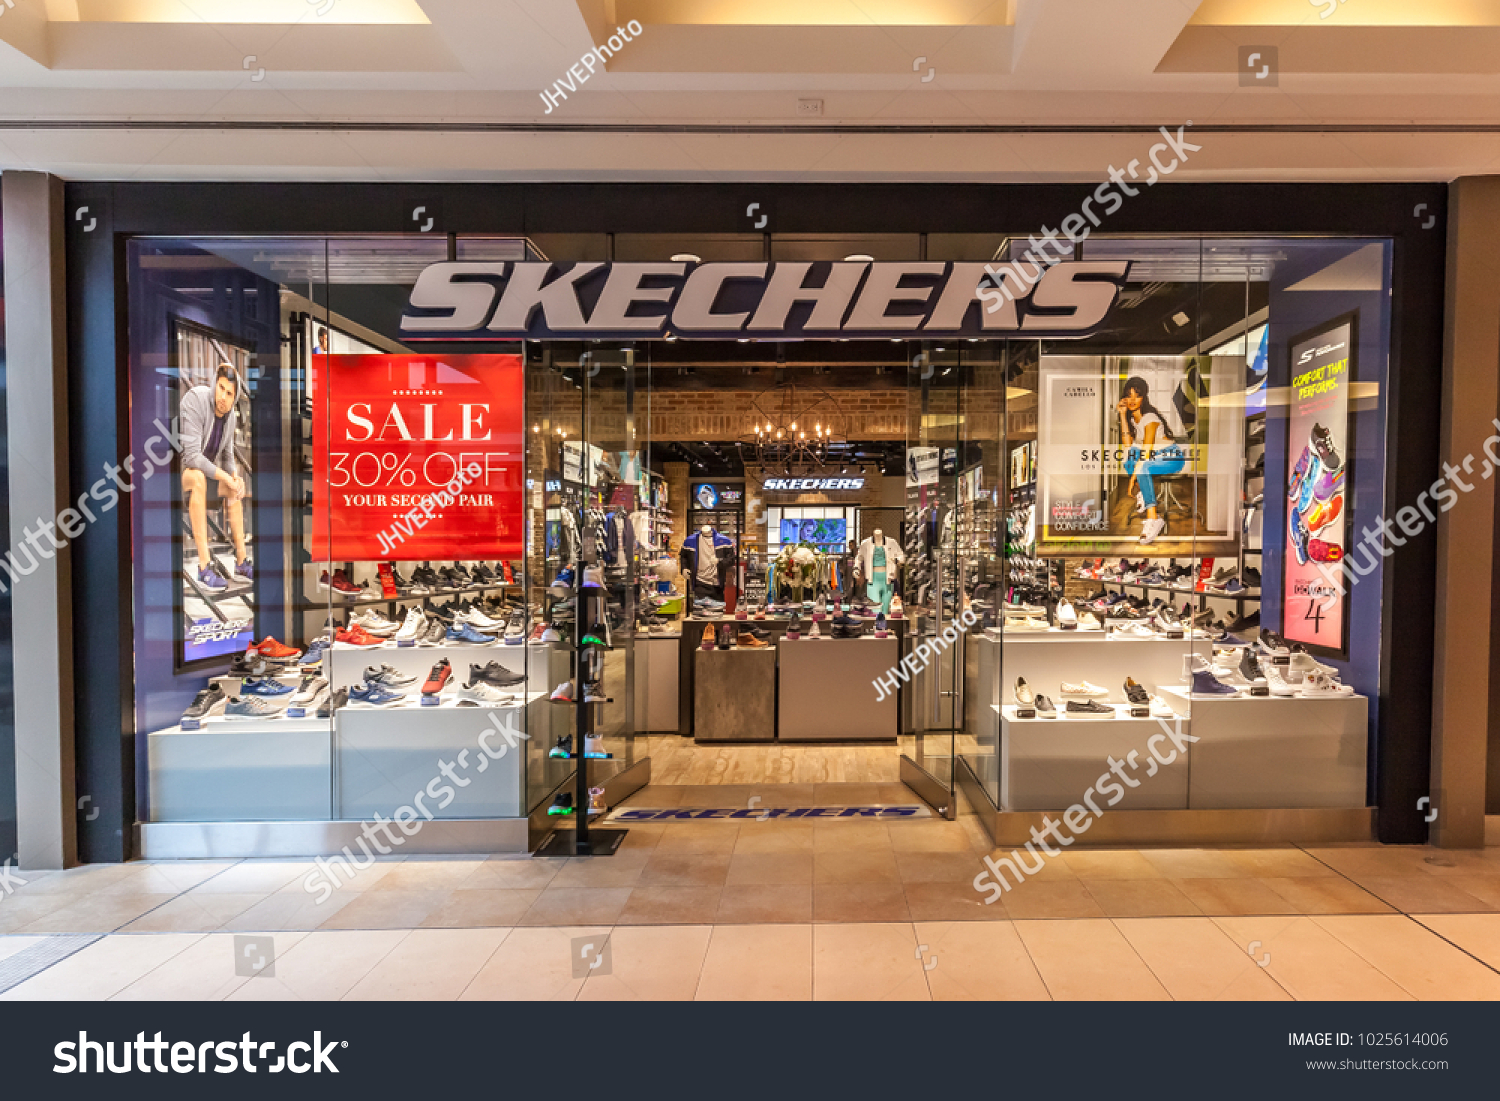 skechers conestoga mall